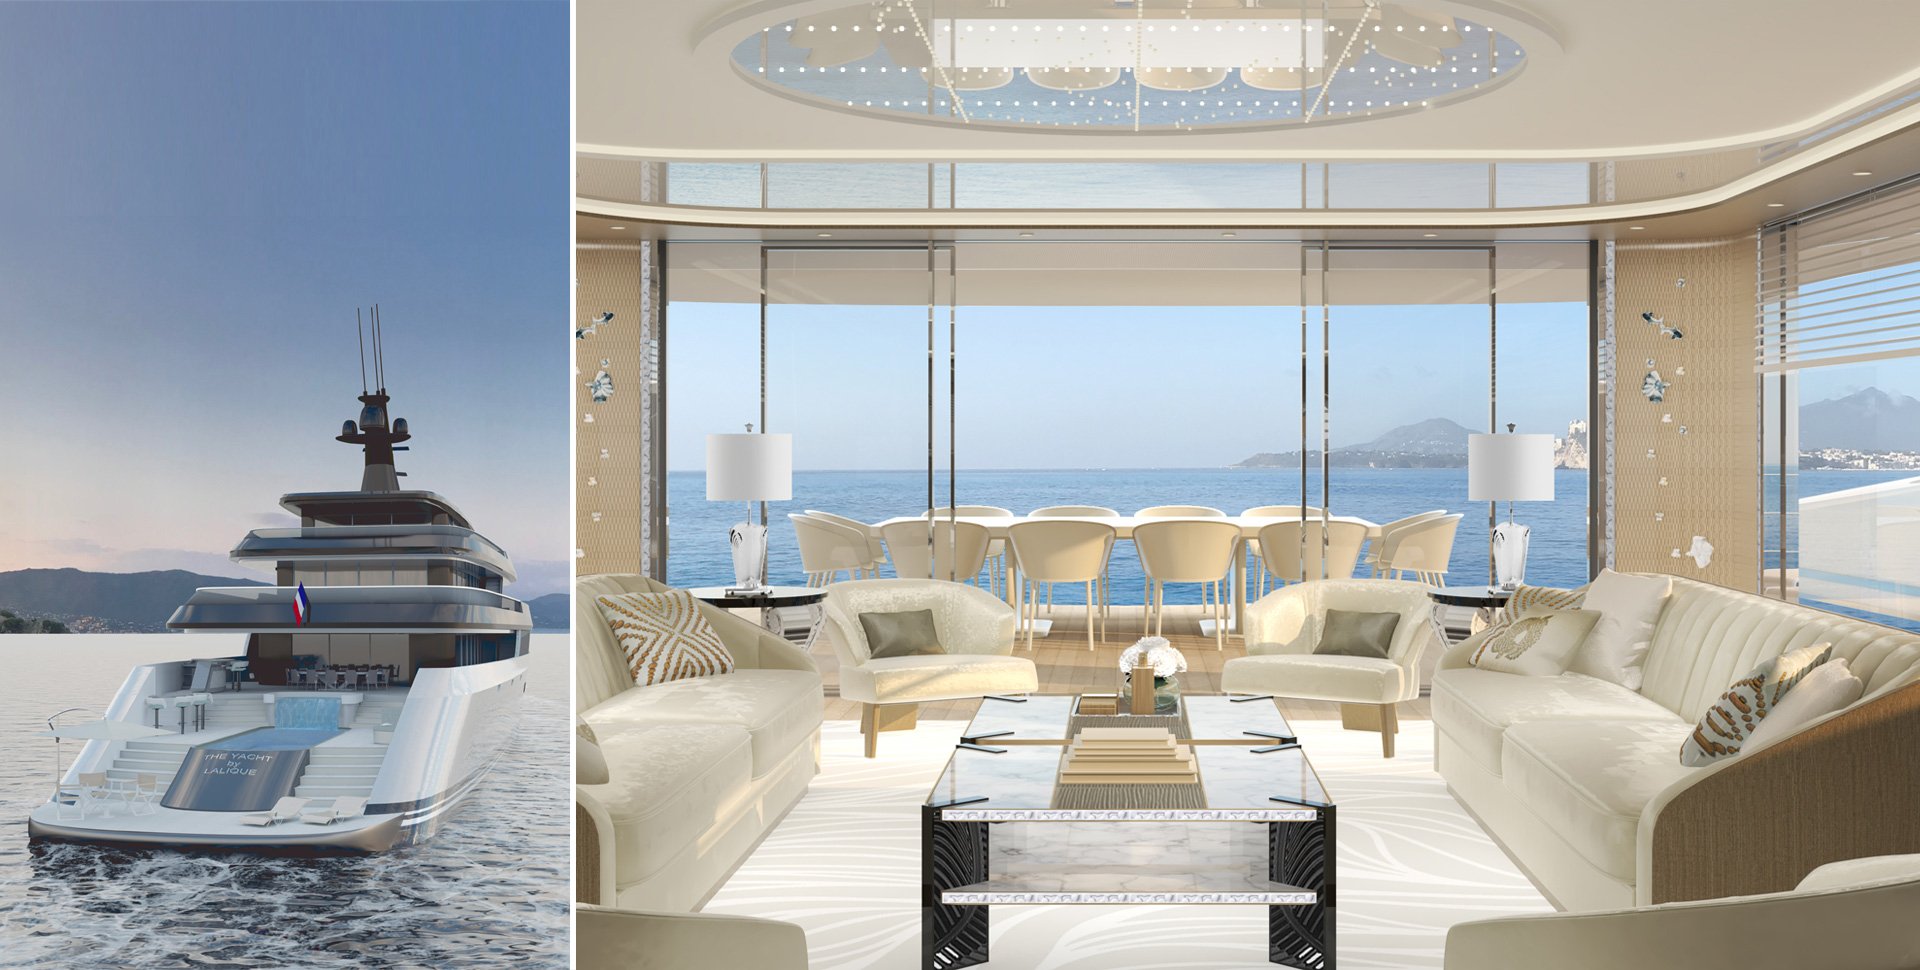 The yacht by Lalique par Borella Art Design